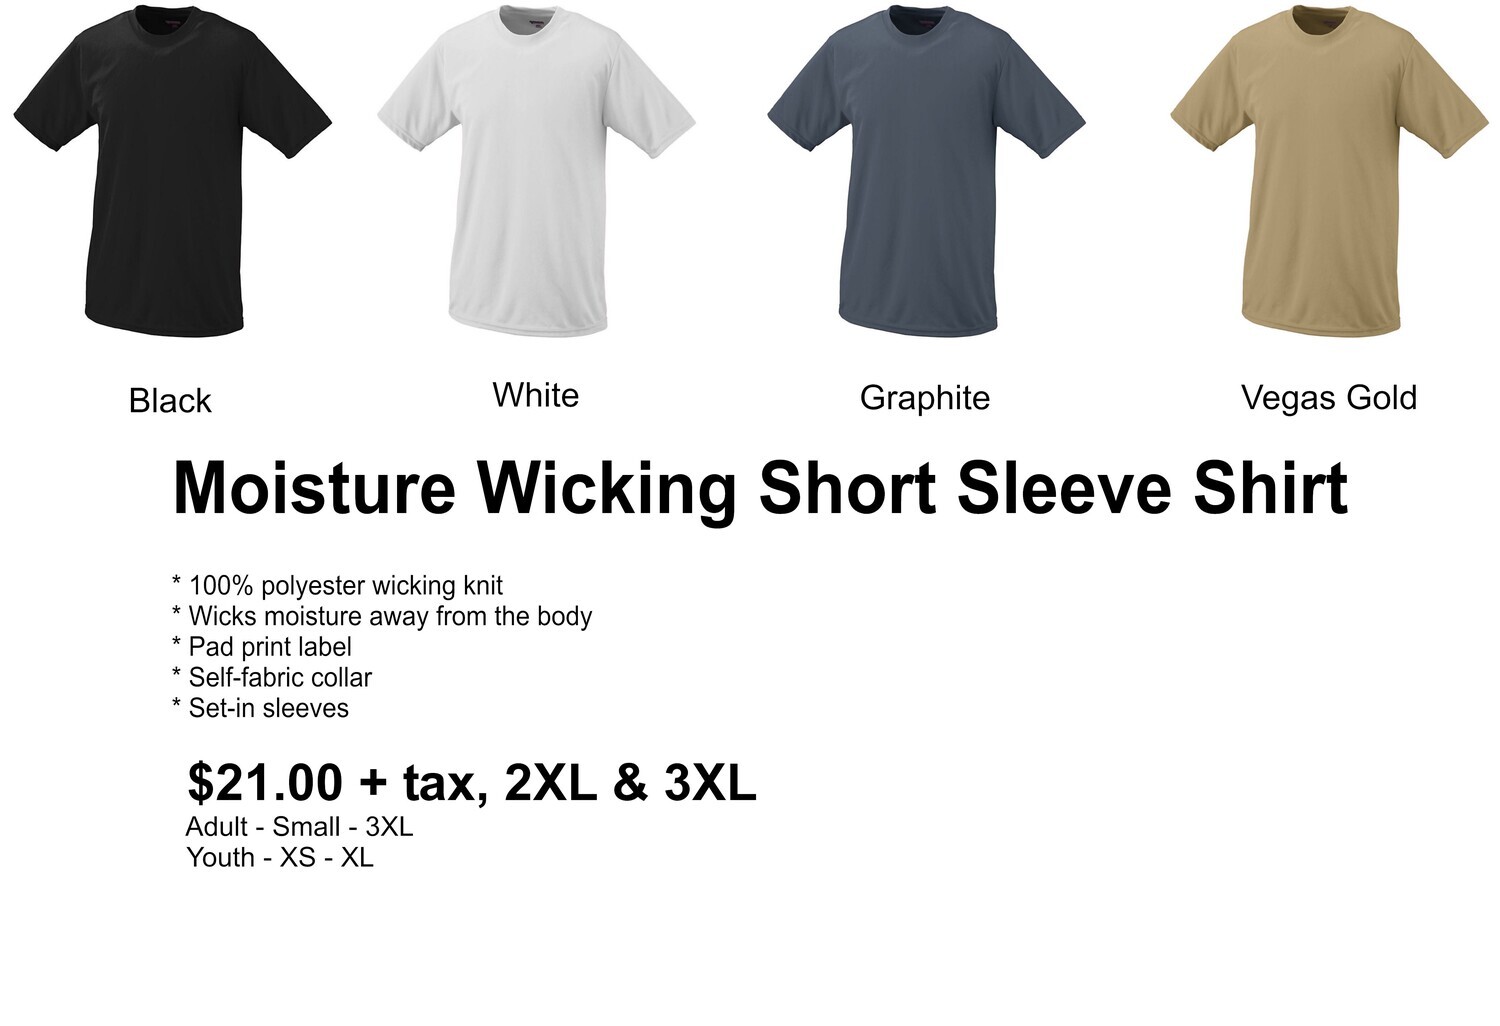 Moisture Wicking Short Sleeve Shirt